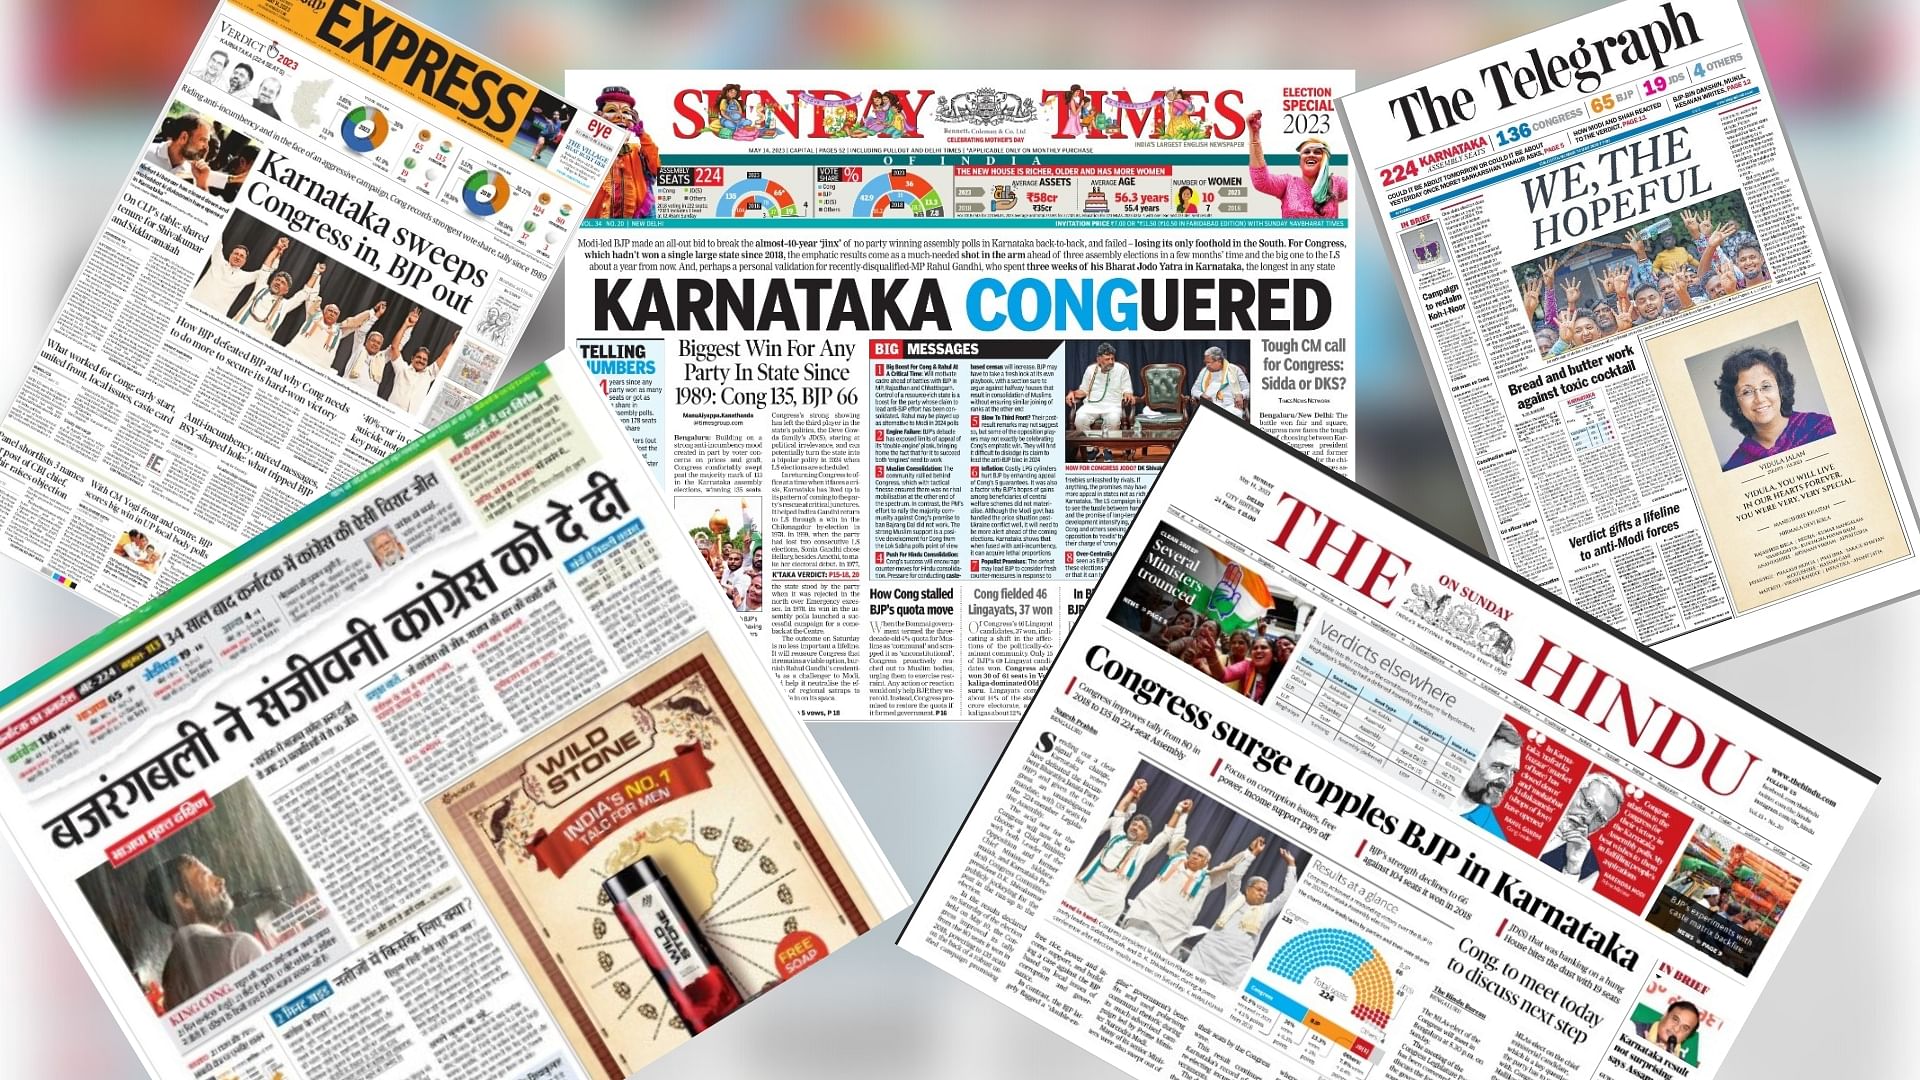 <div class="paragraphs"><p>कर्नाटक विधानसभा चुनाव के नतीजों पर देश के प्रमुख अखबारों में क्या छपा?</p></div>